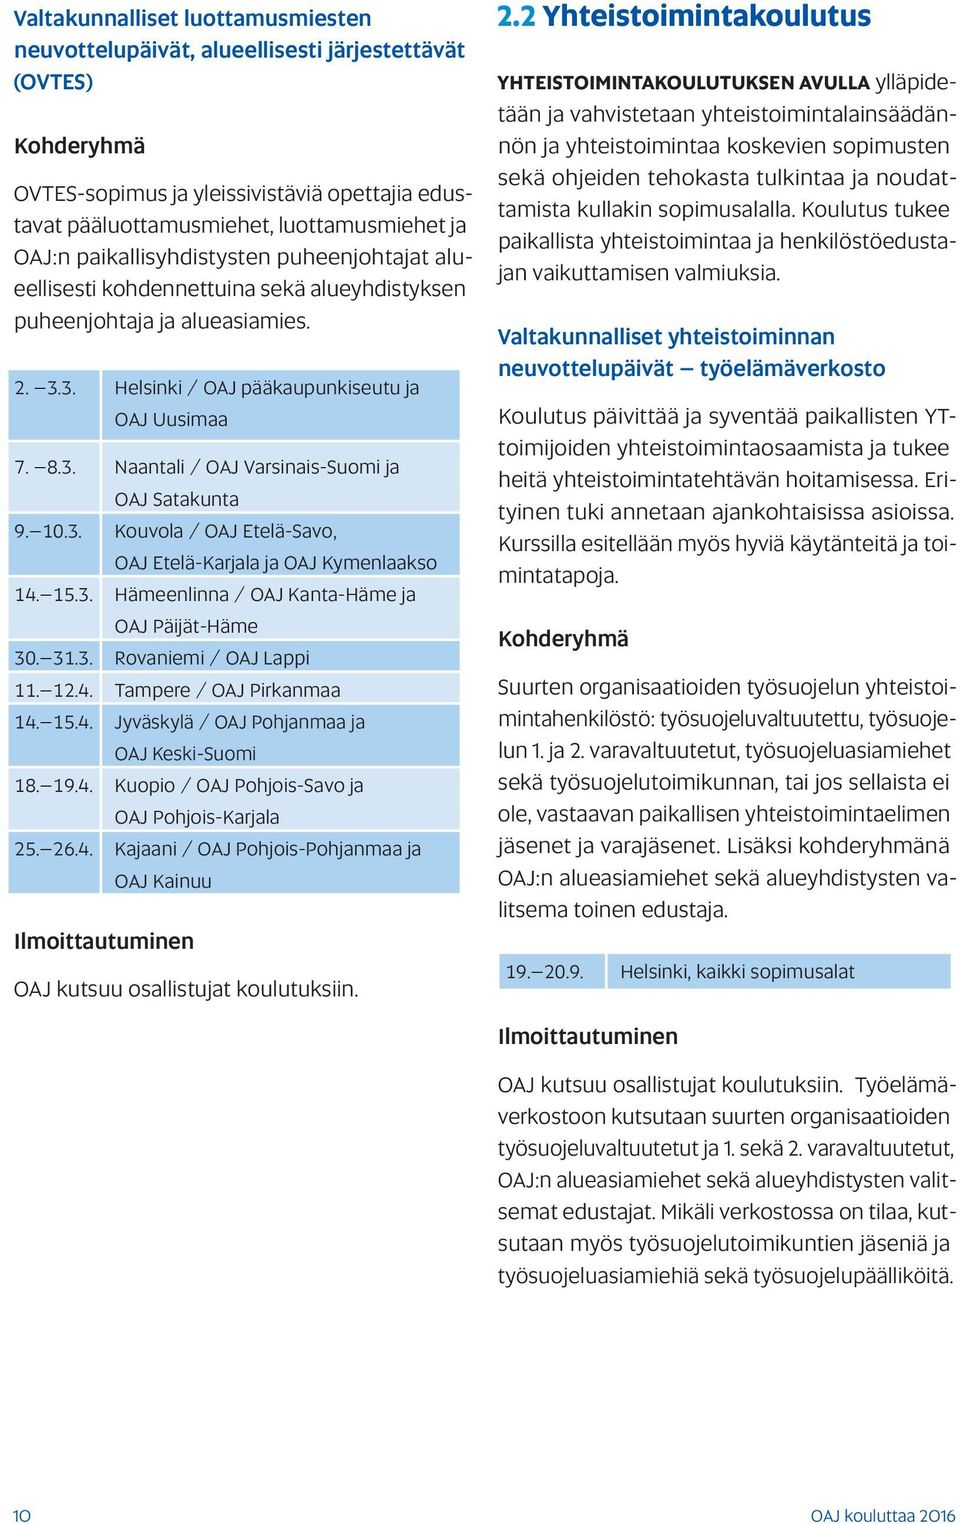 10.3. Kouvola / OAJ Etelä-Savo, OAJ Etelä-Karjala ja OAJ Kymenlaakso 14. 15.3. Hämeenlinna / OAJ Kanta-Häme ja OAJ Päijät-Häme 30. 31.3. Rovaniemi / OAJ Lappi 11. 12.4. Tampere / OAJ Pirkanmaa 14. 15.4. Jyväskylä / OAJ Pohjanmaa ja OAJ Keski-Suomi 18.